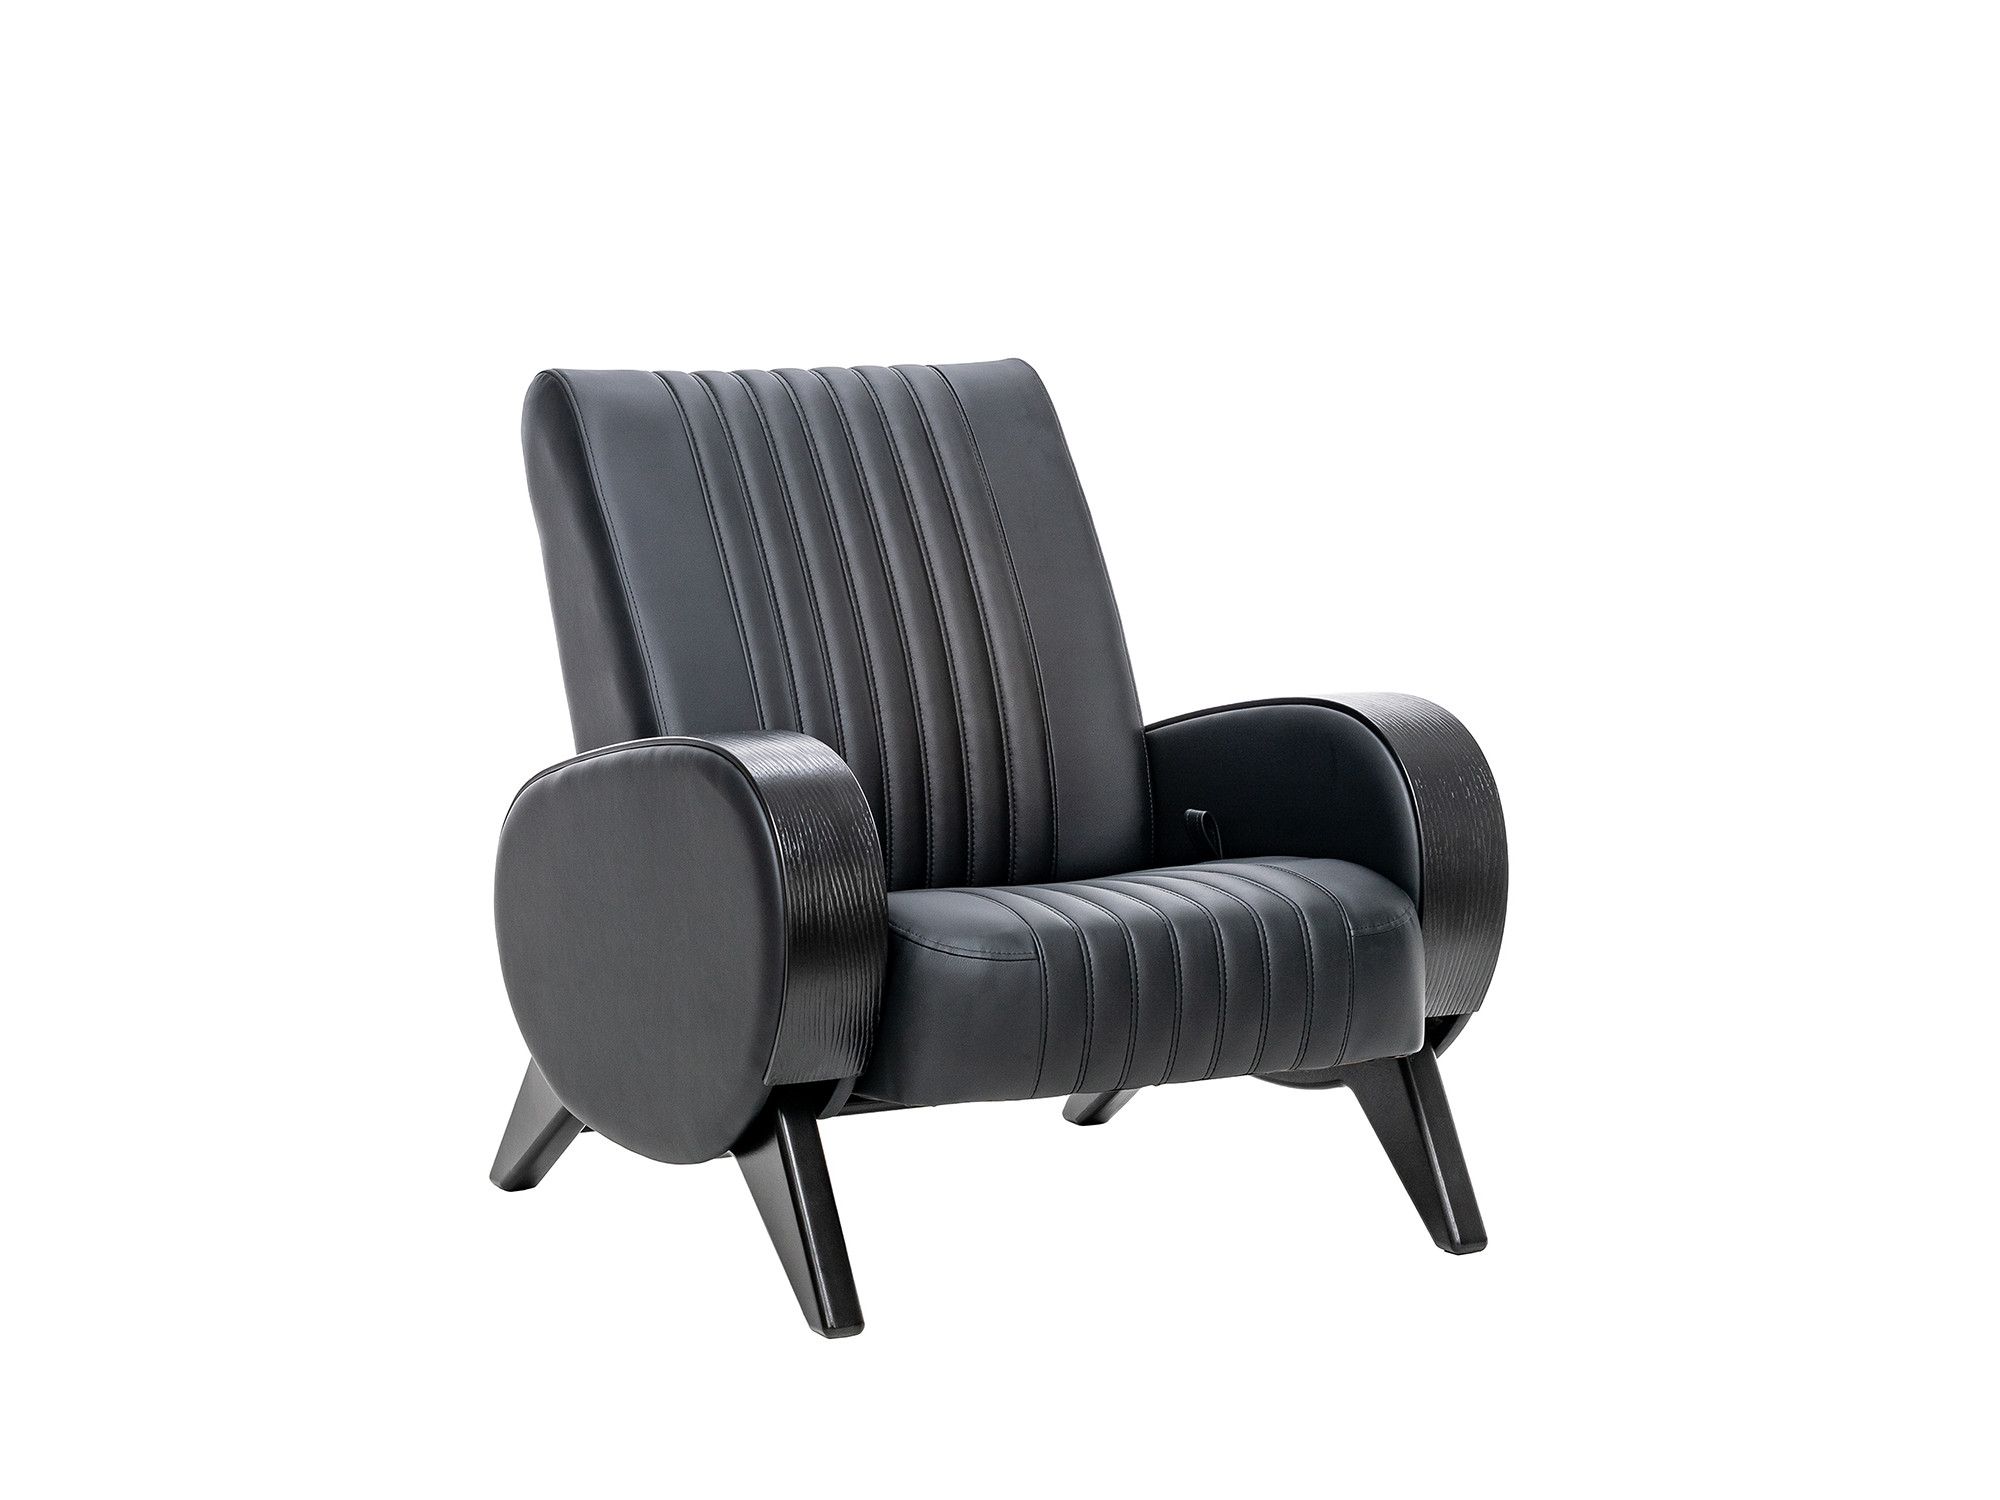 кресло для отдыха модель 61 mebelvia mango 002 экокожа берёзовая фанера Кресло-глайдер Персона Люкс MebelVia Madryt 9100, Экокожа, покрыта эмалью, Берёзовая фанера